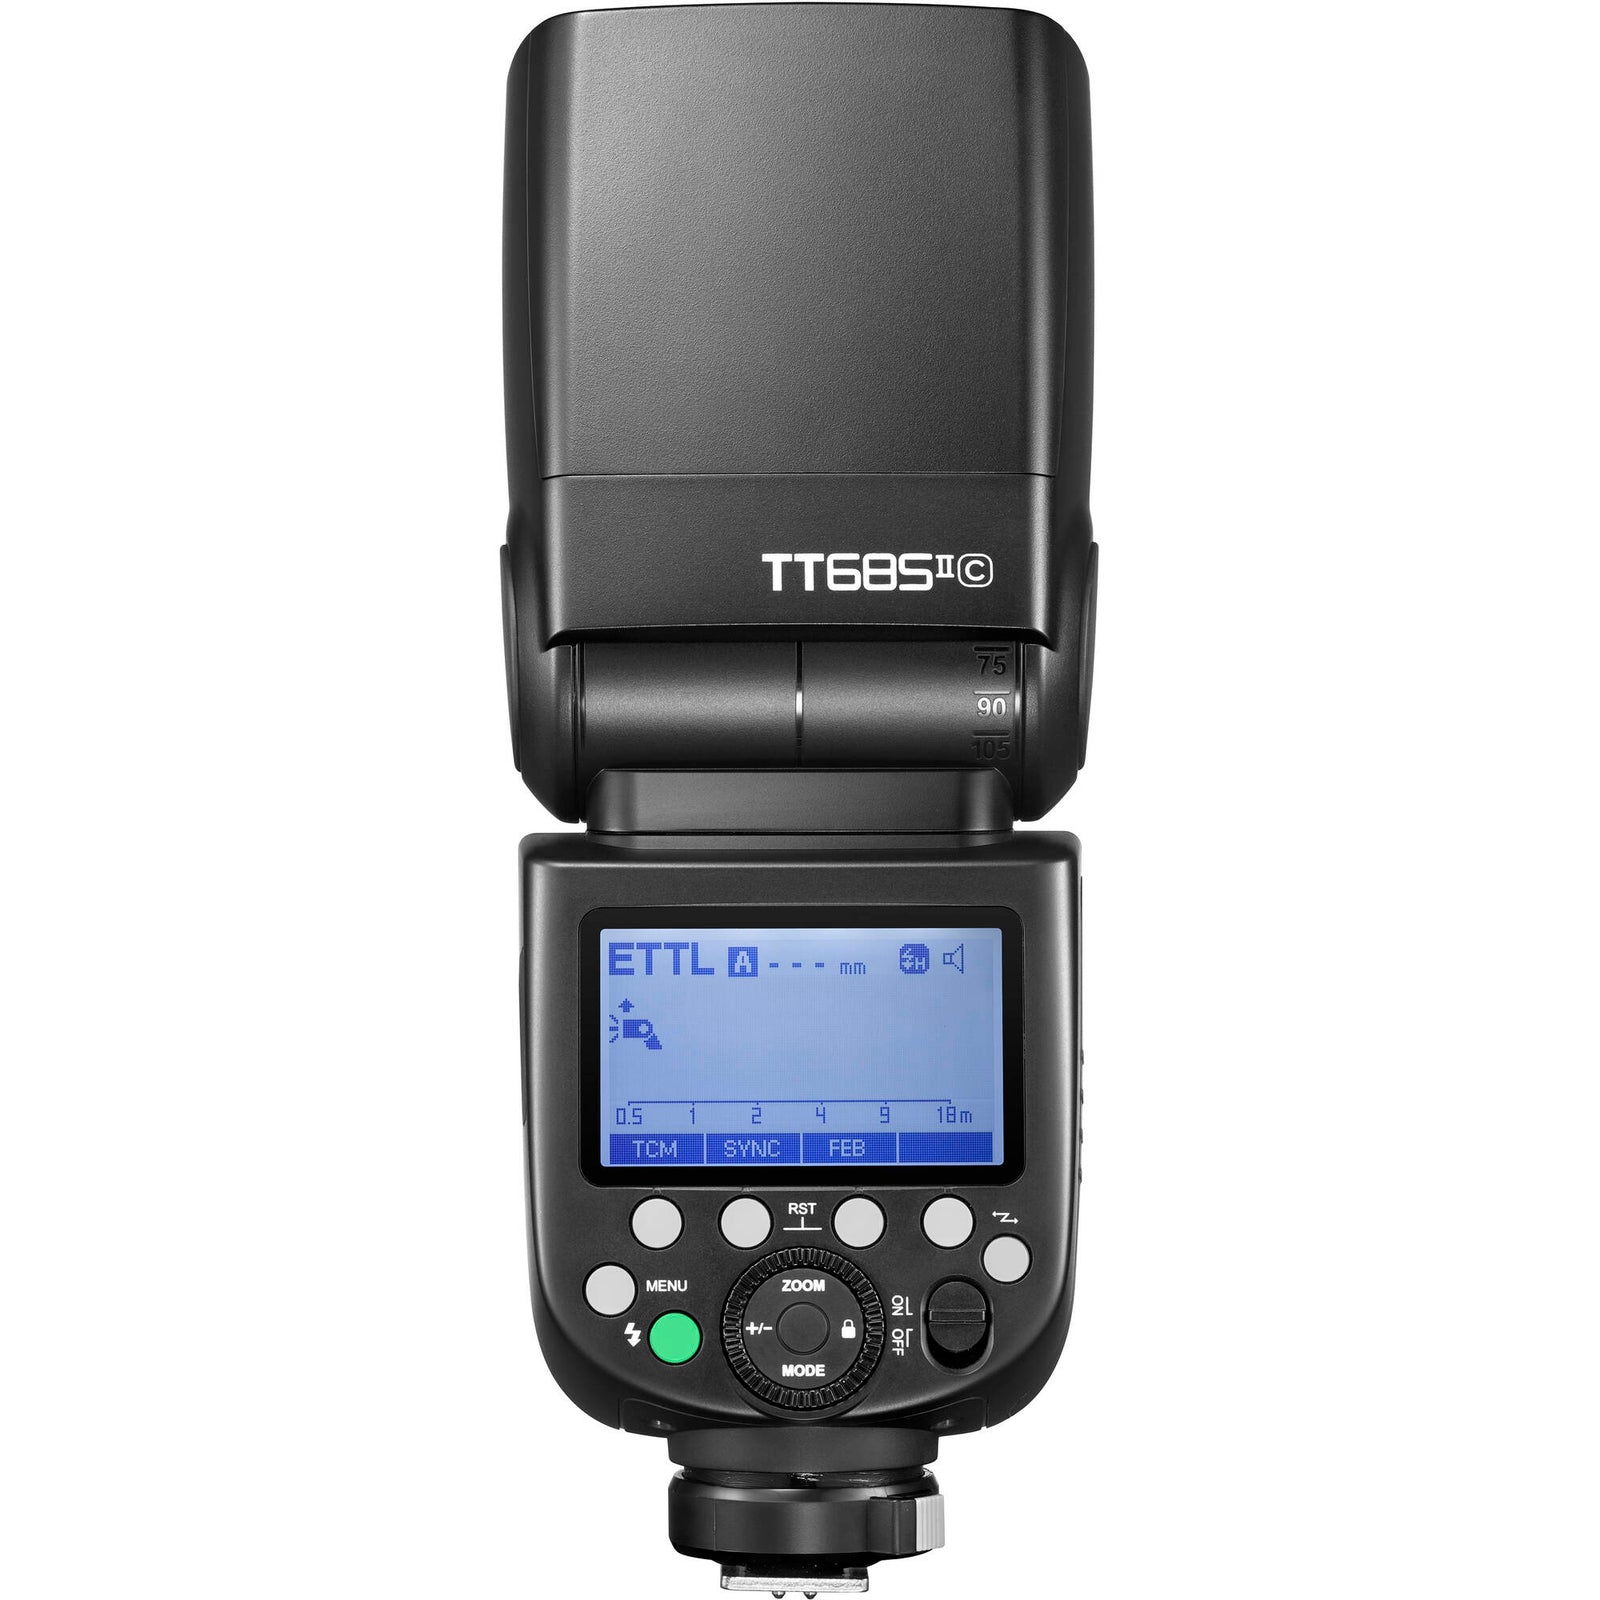 TT685iiC TTL Wireless Speedlite - Canon - Strobepro Studio